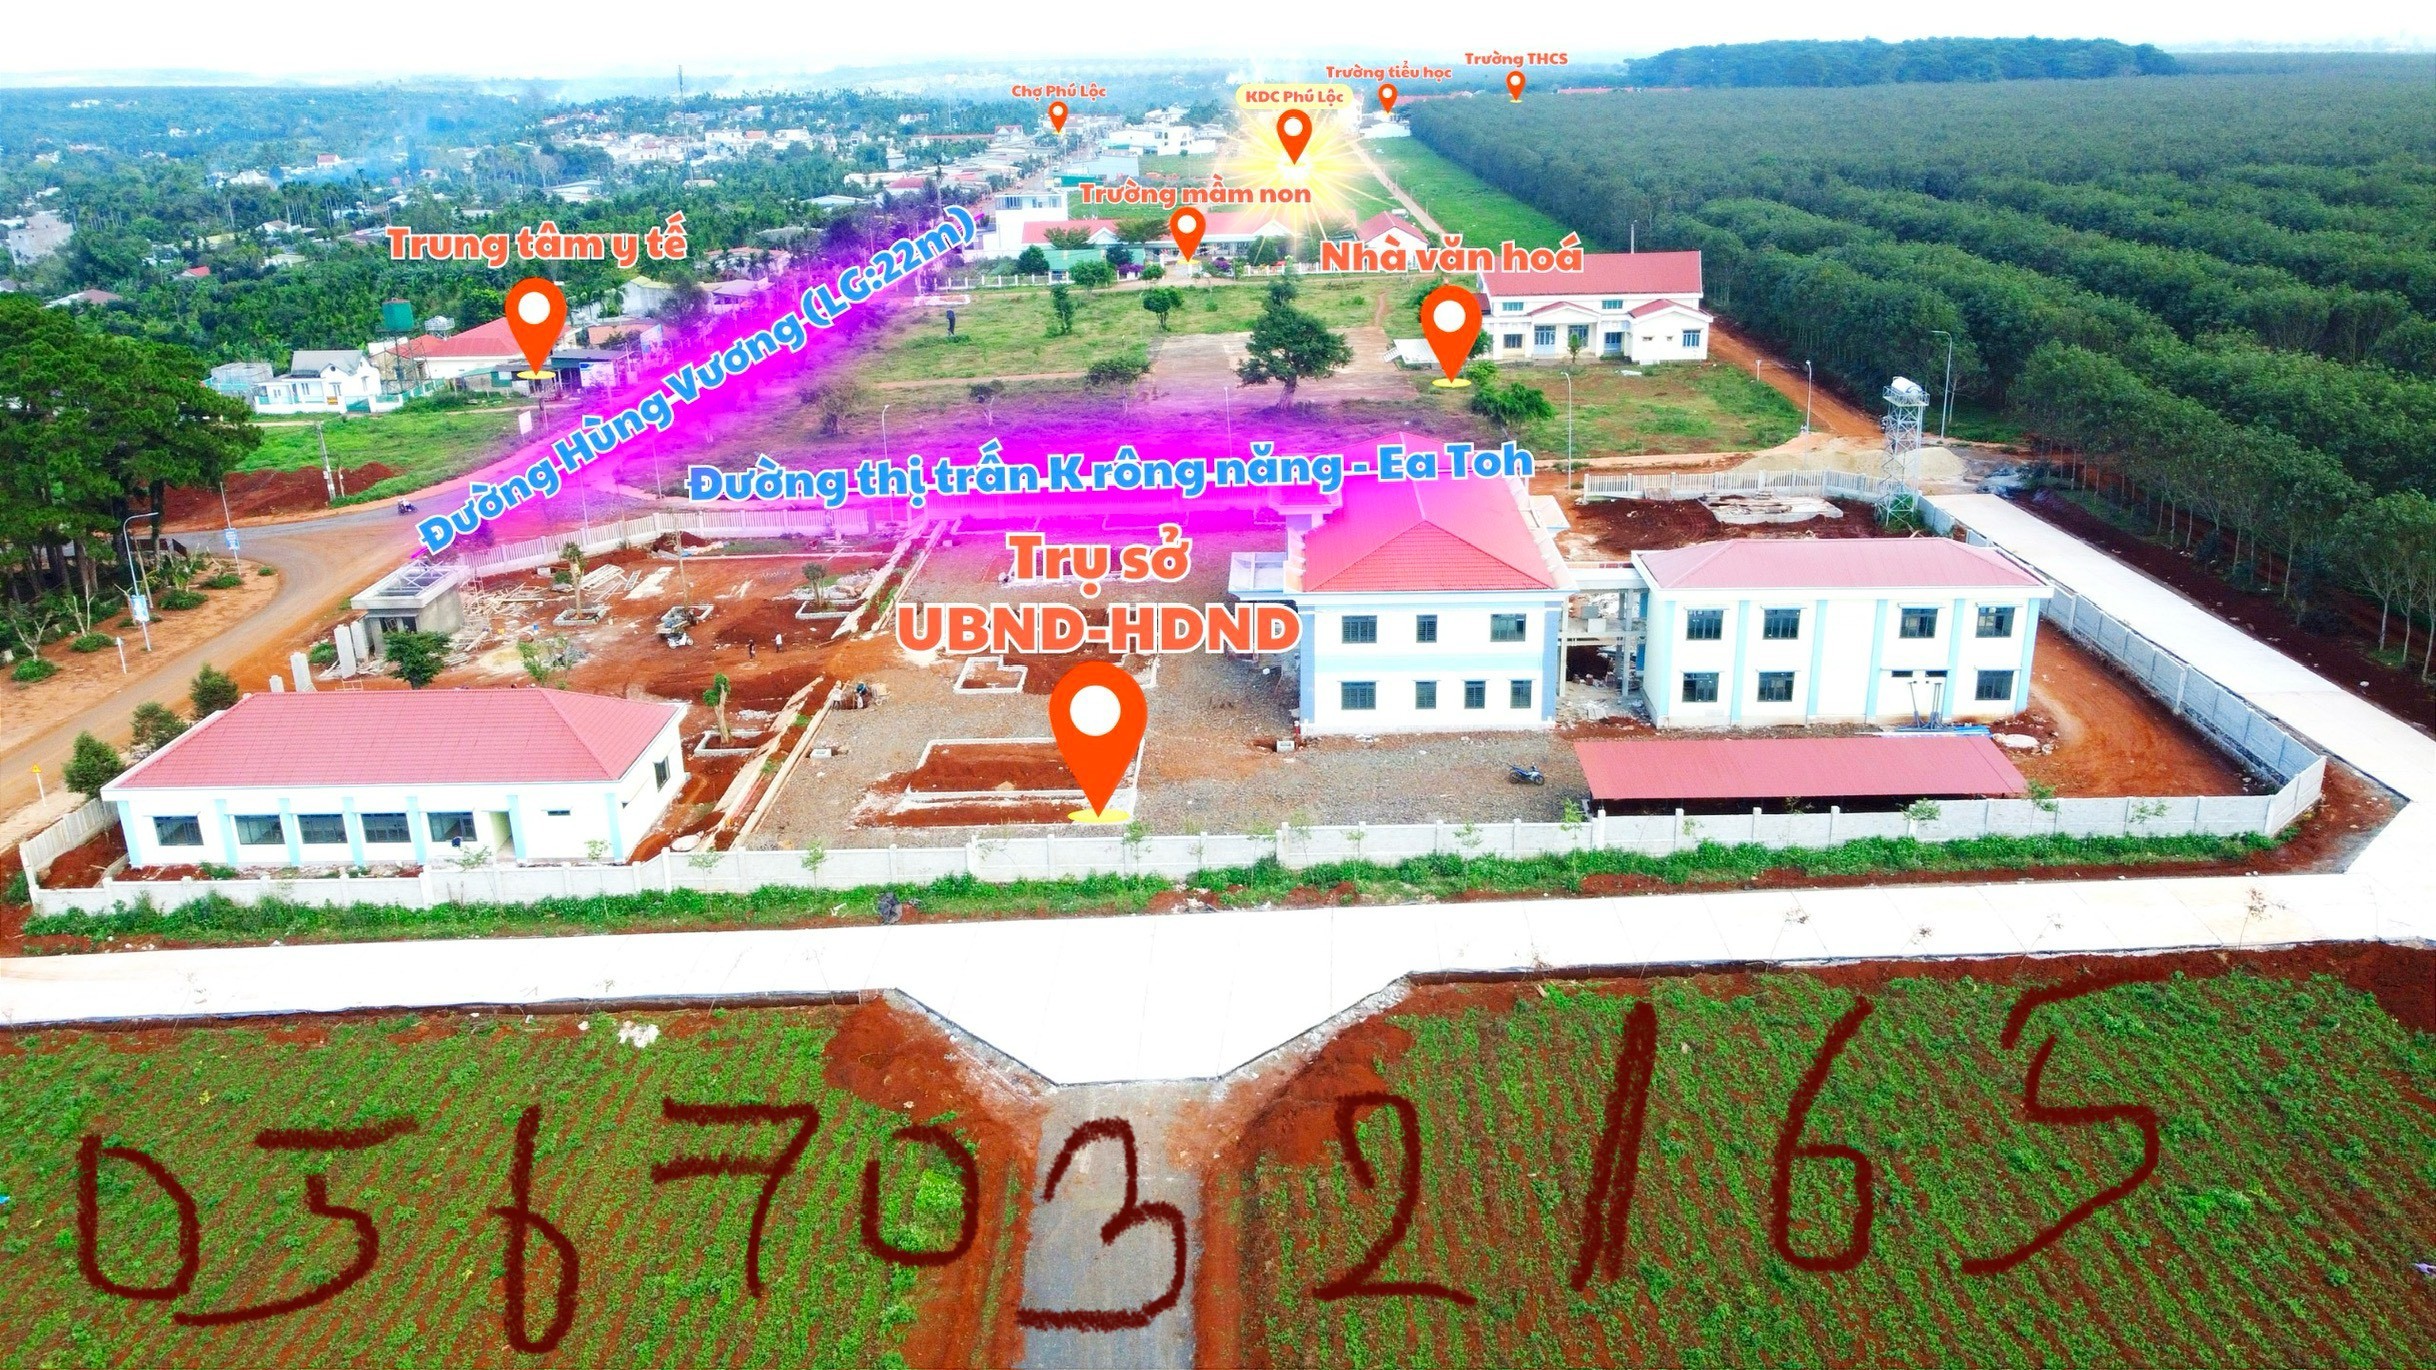 Cơn sốt Phú Lộc Đắk Lắk dịp cuối năm 2023, CHỚP CƠ HỘI SĂN TƯƠNG LAI 7